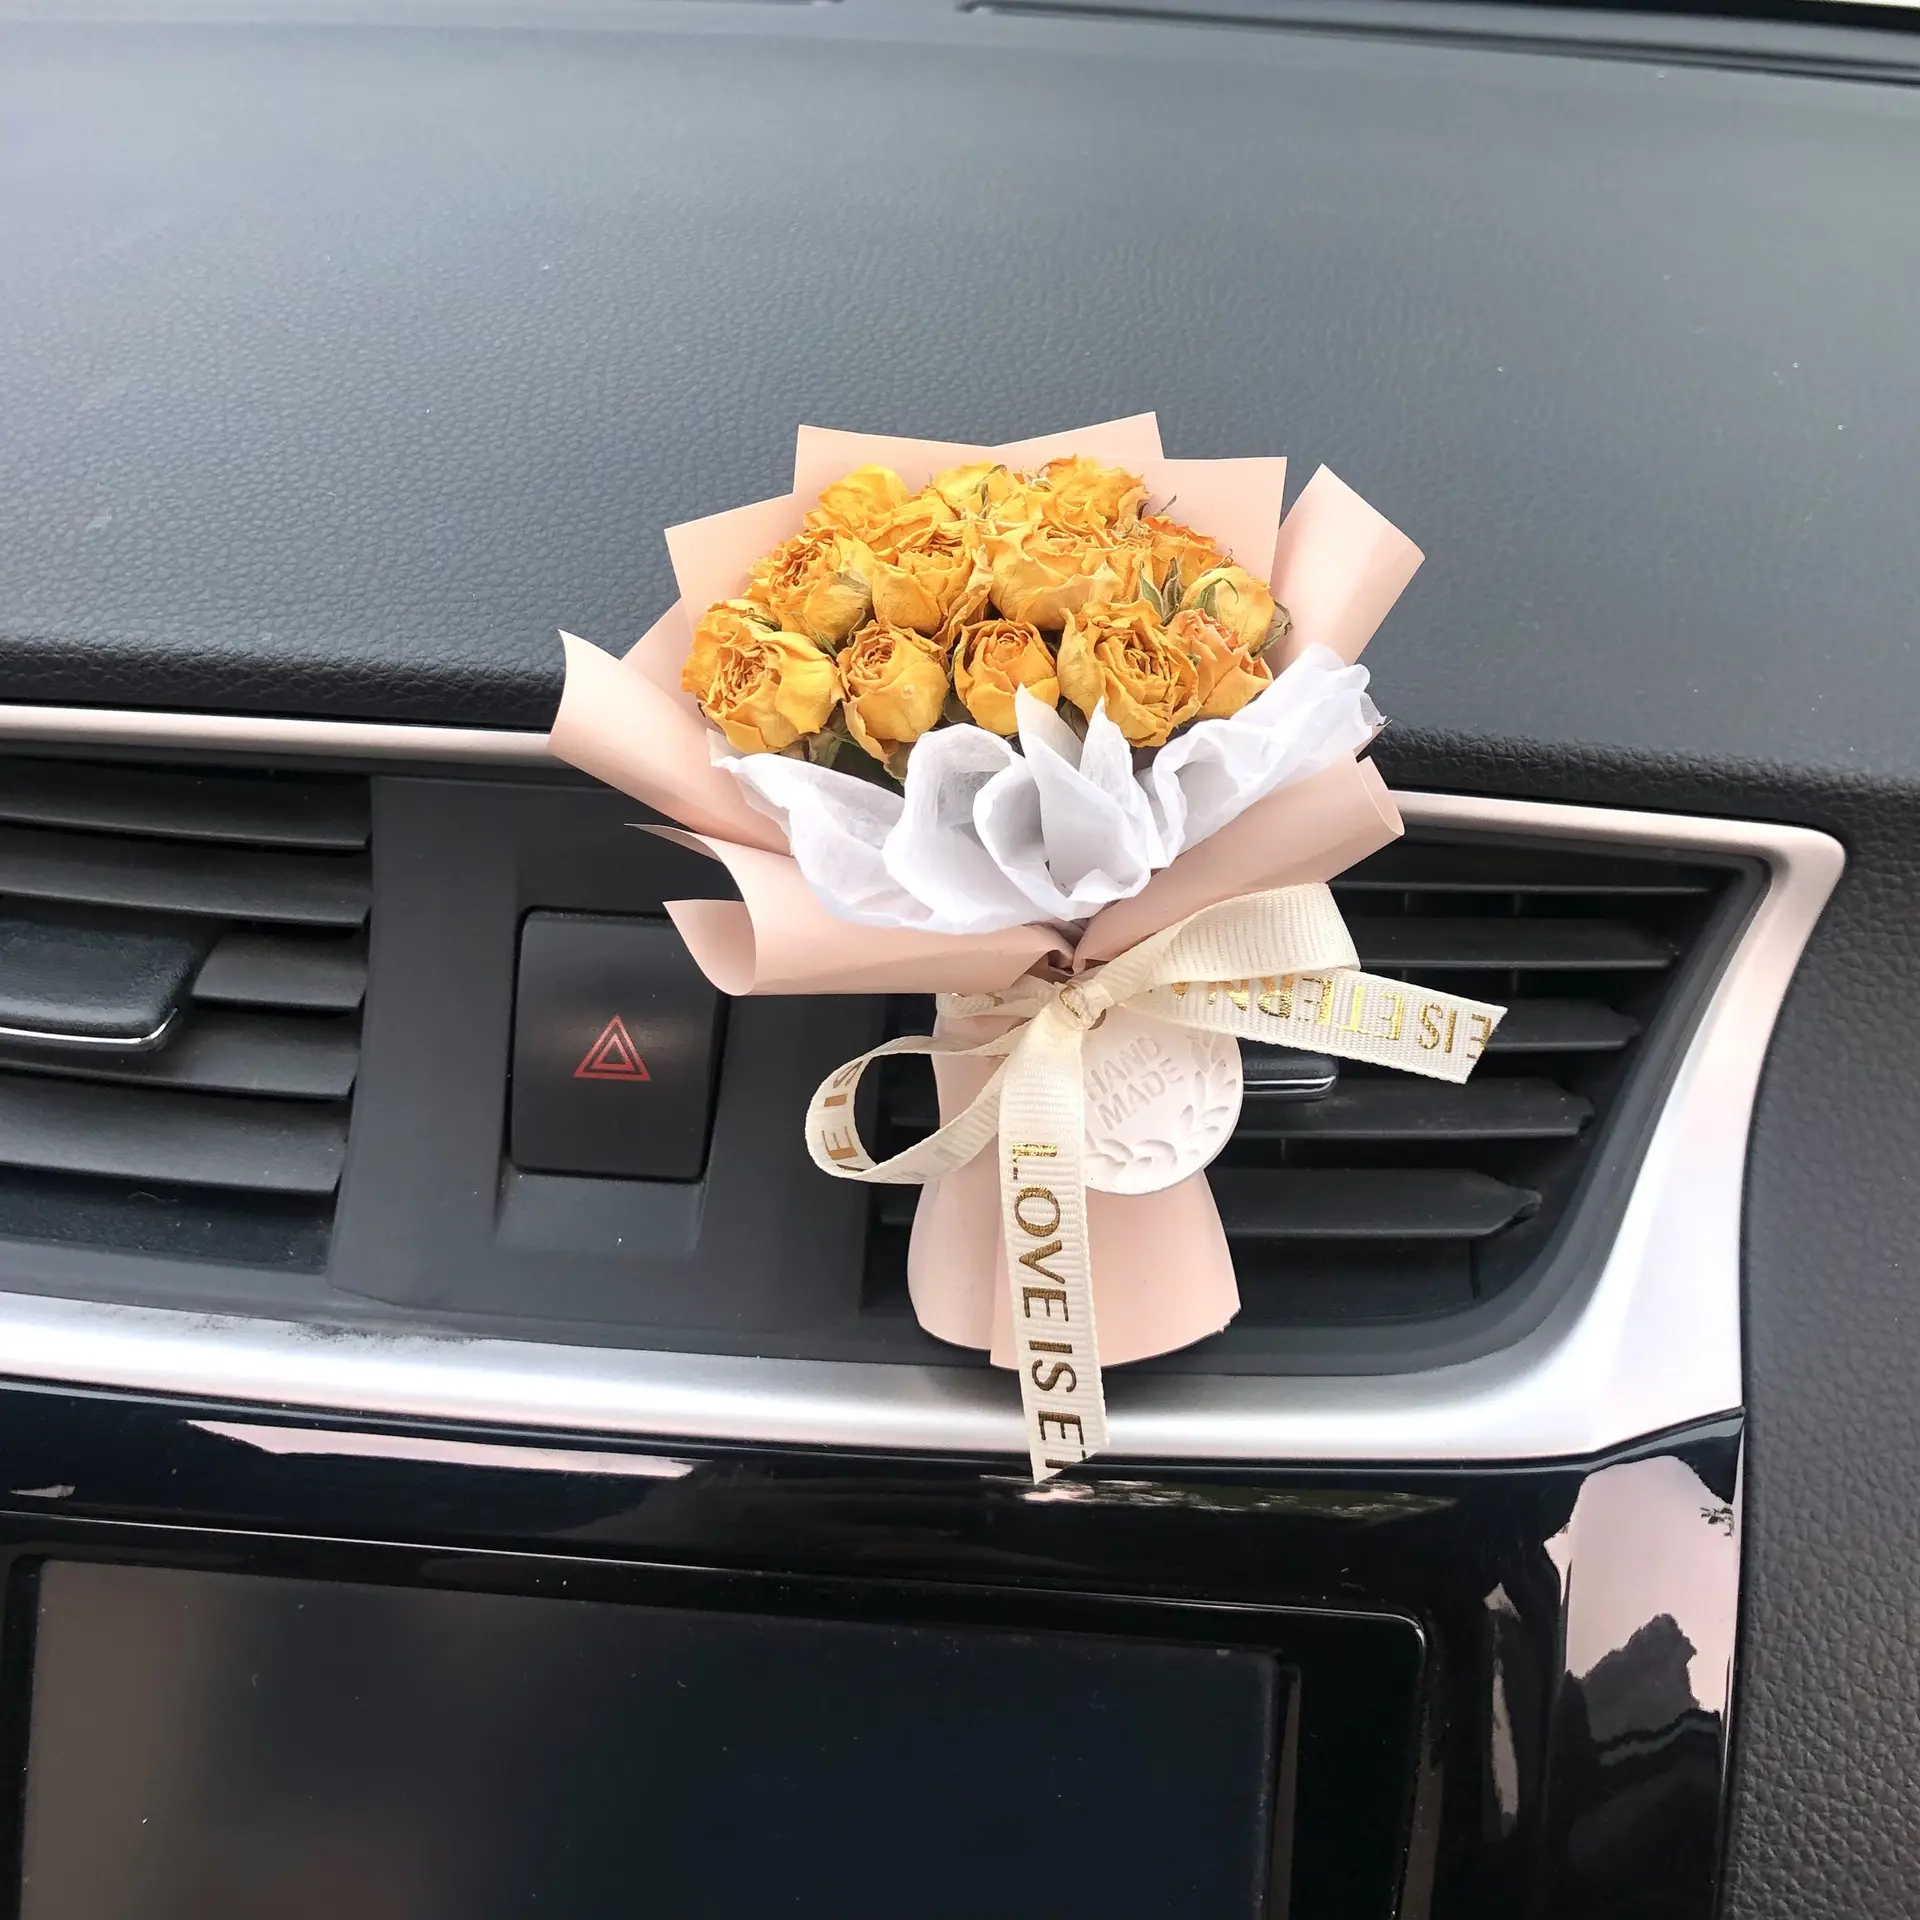 टेक्सास कार यूनिवर्सल ईेशनर उत्तम सूखे फूल खुशबू के साथ सजाया ClipFragrance ऑटो सामान आंतरिक इत्र